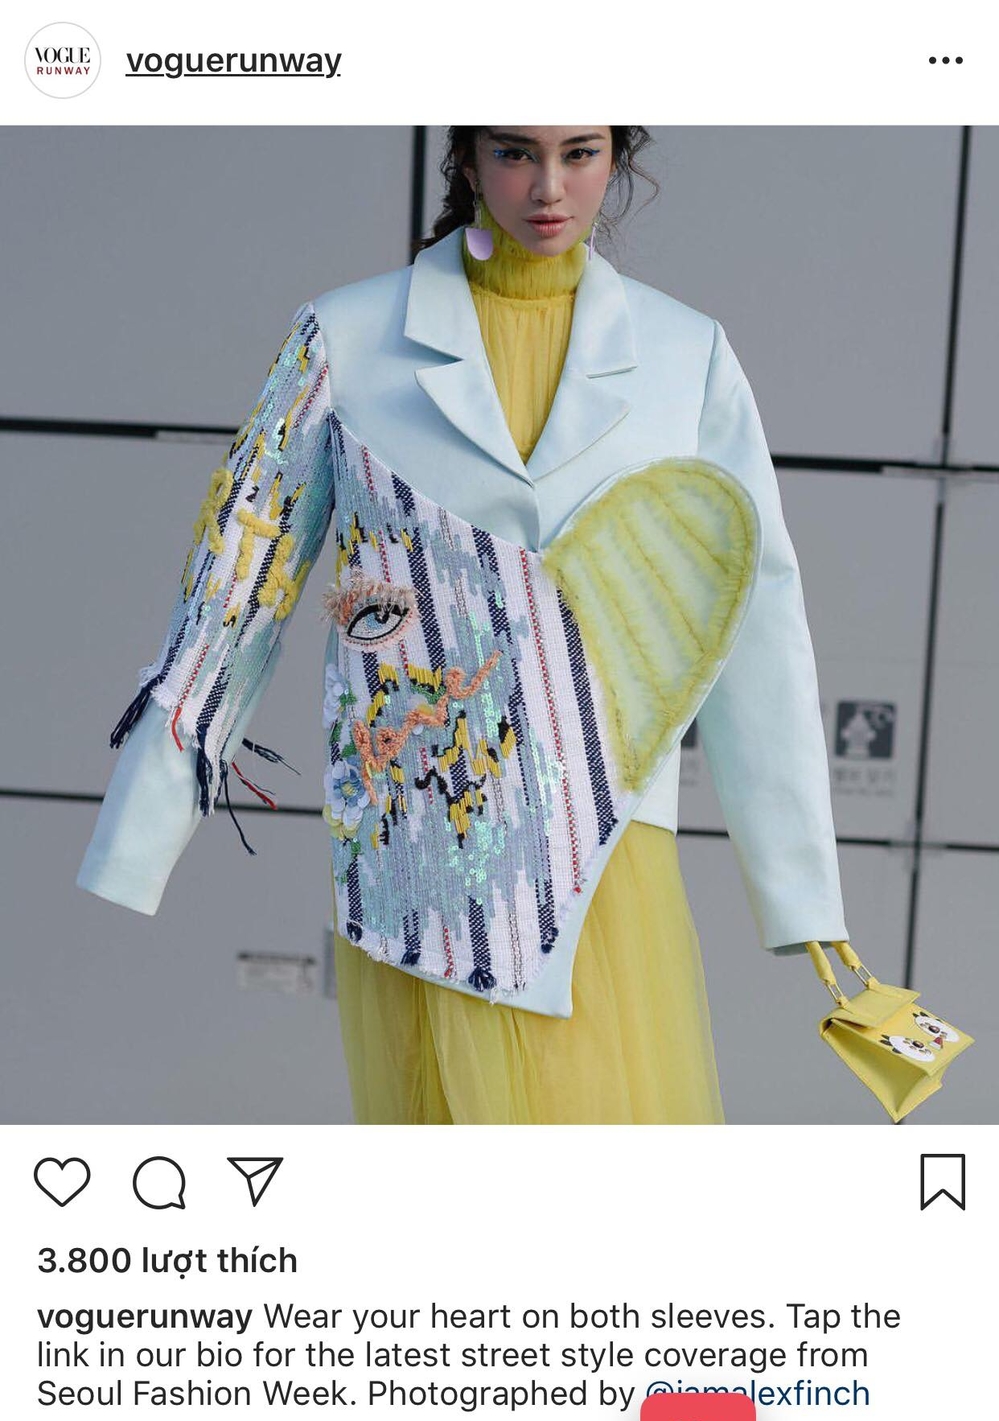 
Với street style "chất" và nổi bật không kém các fashionista xứ Hàn, Thiên Nga nhanh chóng lọt vào tầm ngắm của hàng loạt nhiếp ảnh gia street style, truyền thông quốc tế và ngồi "chễm chệ" trên Instagram của Vogue.